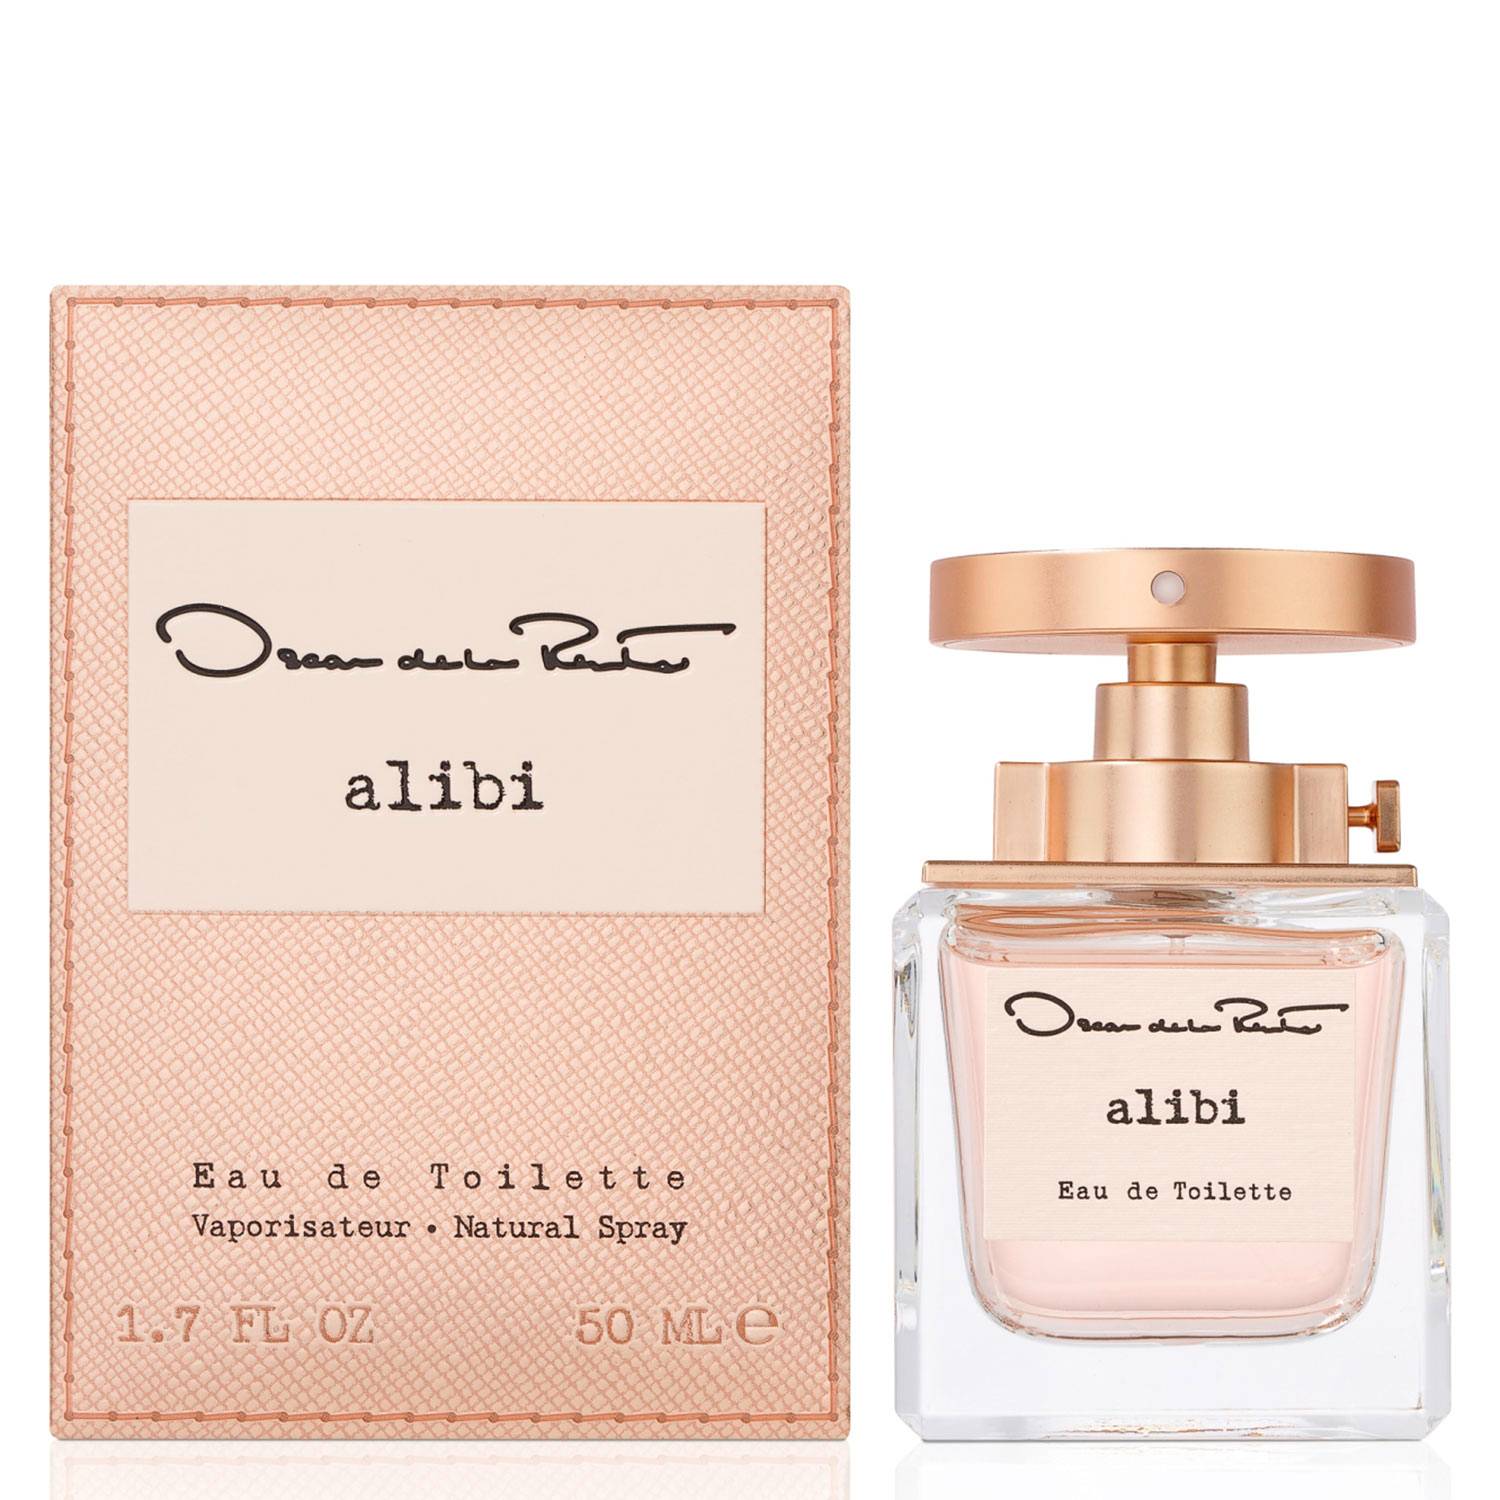 Perfume-Oscar-De-La-Renta-Alibi-EDT